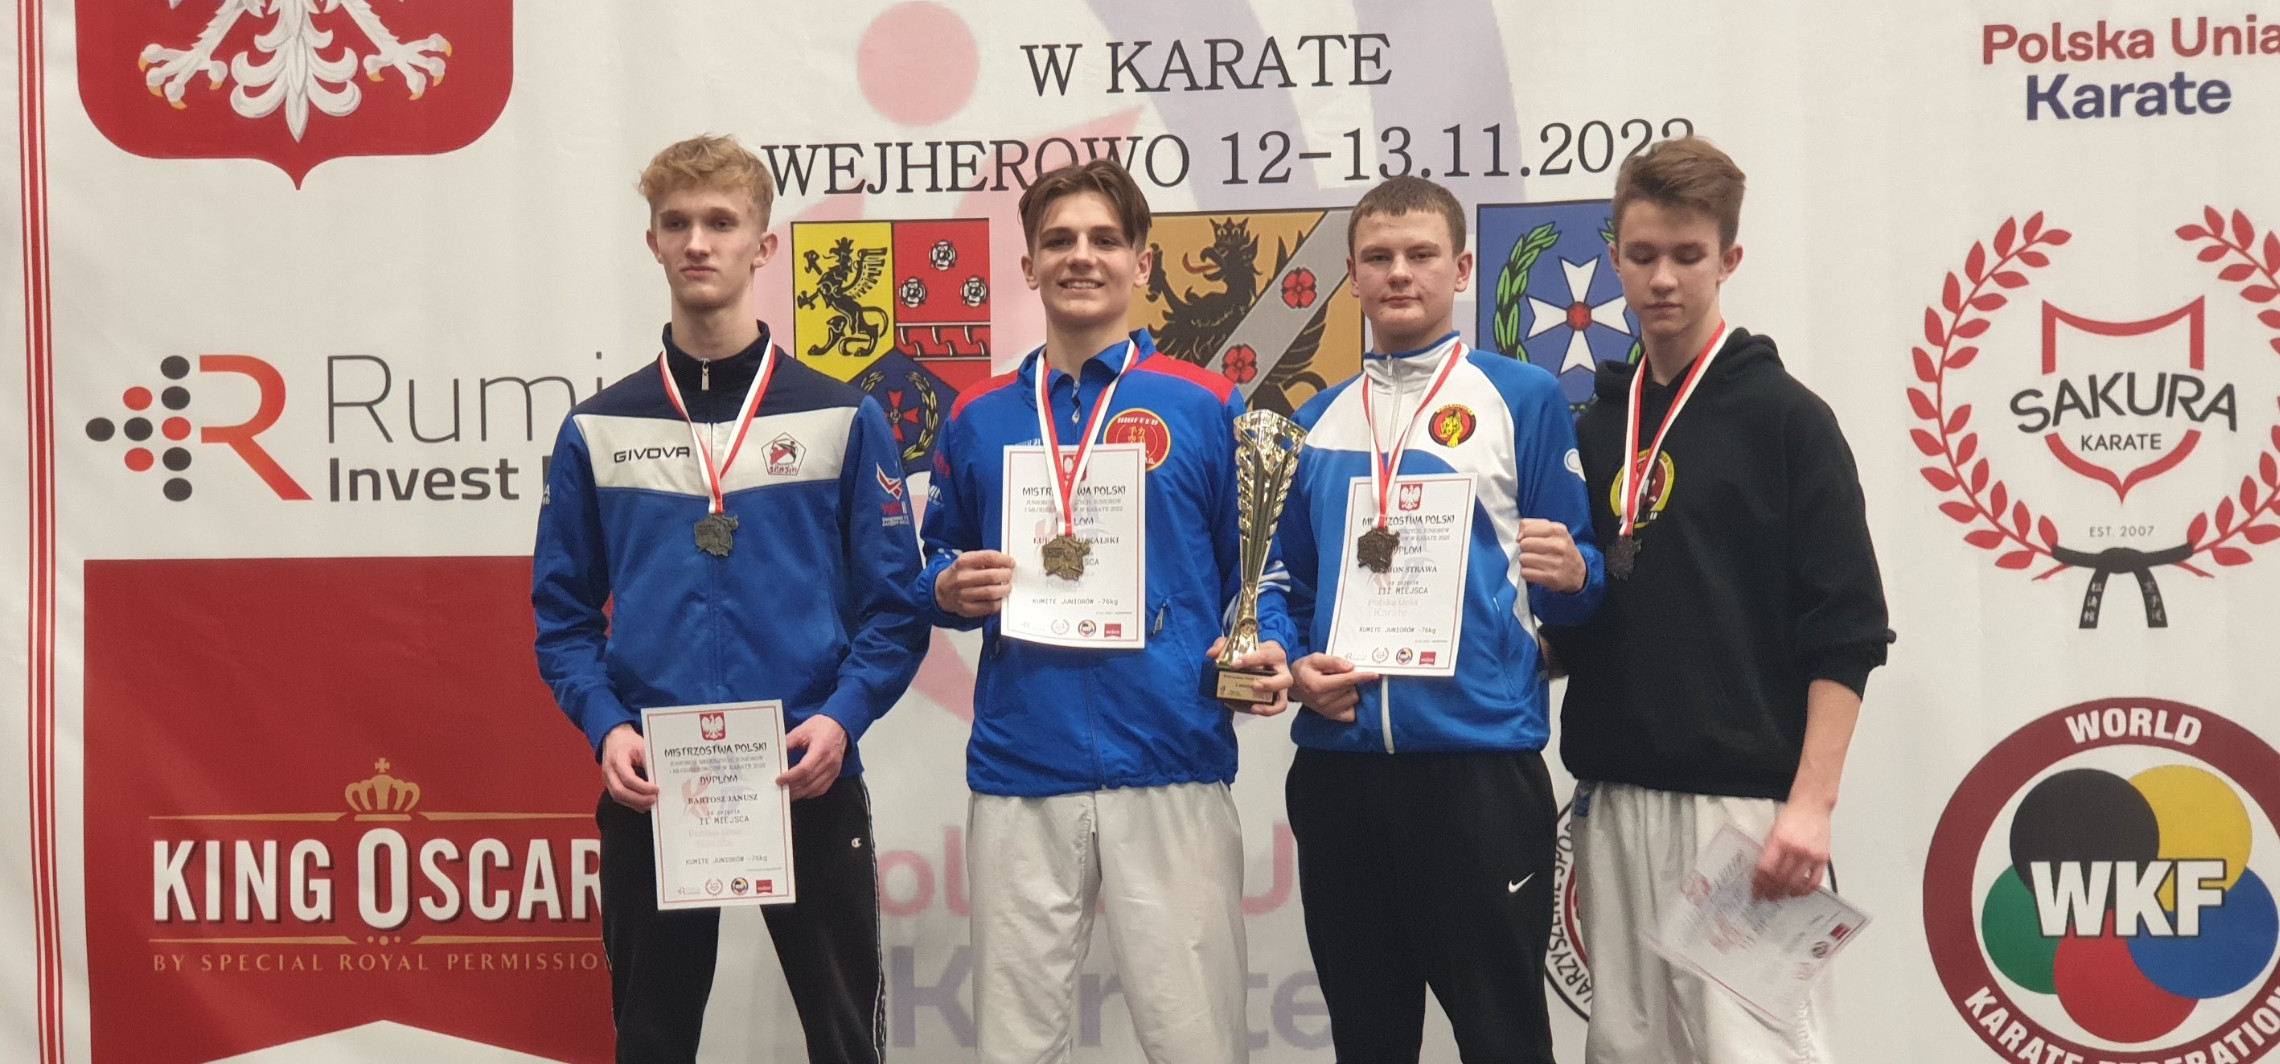 Inowrocław - Inowrocławscy karatecy znów spisali się na medal